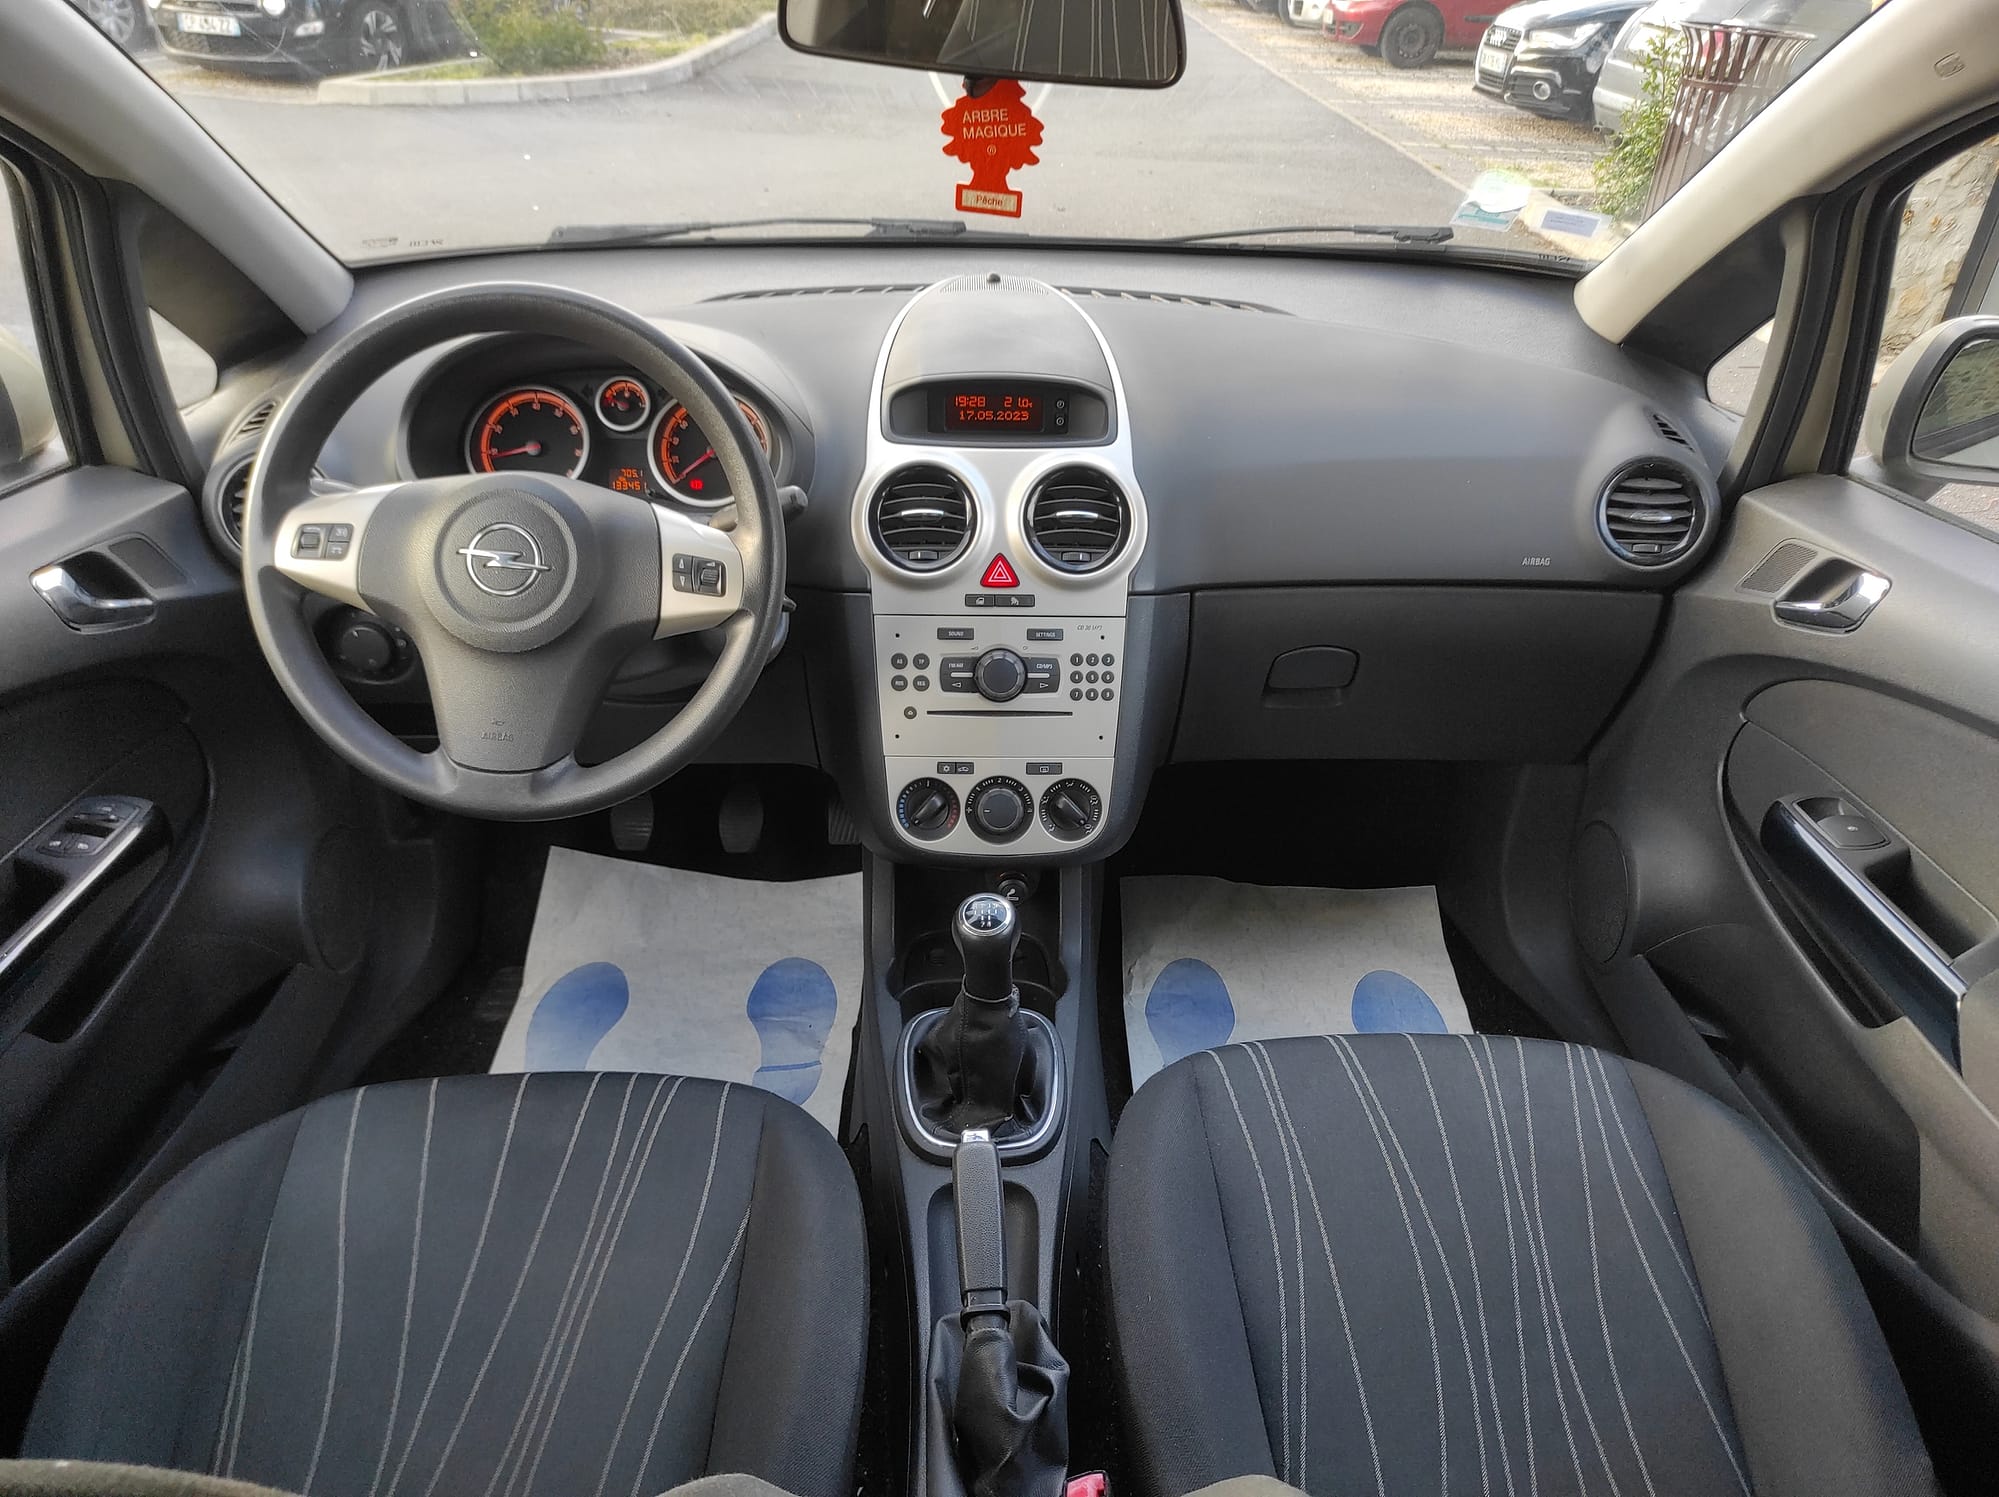 Opel Corsa IV 2006 1.2 Twinport Enjoy 5P - Automatix Motors - Voiture Occasion - Achat Voiture - Vente Voiture - Reprise Voiture